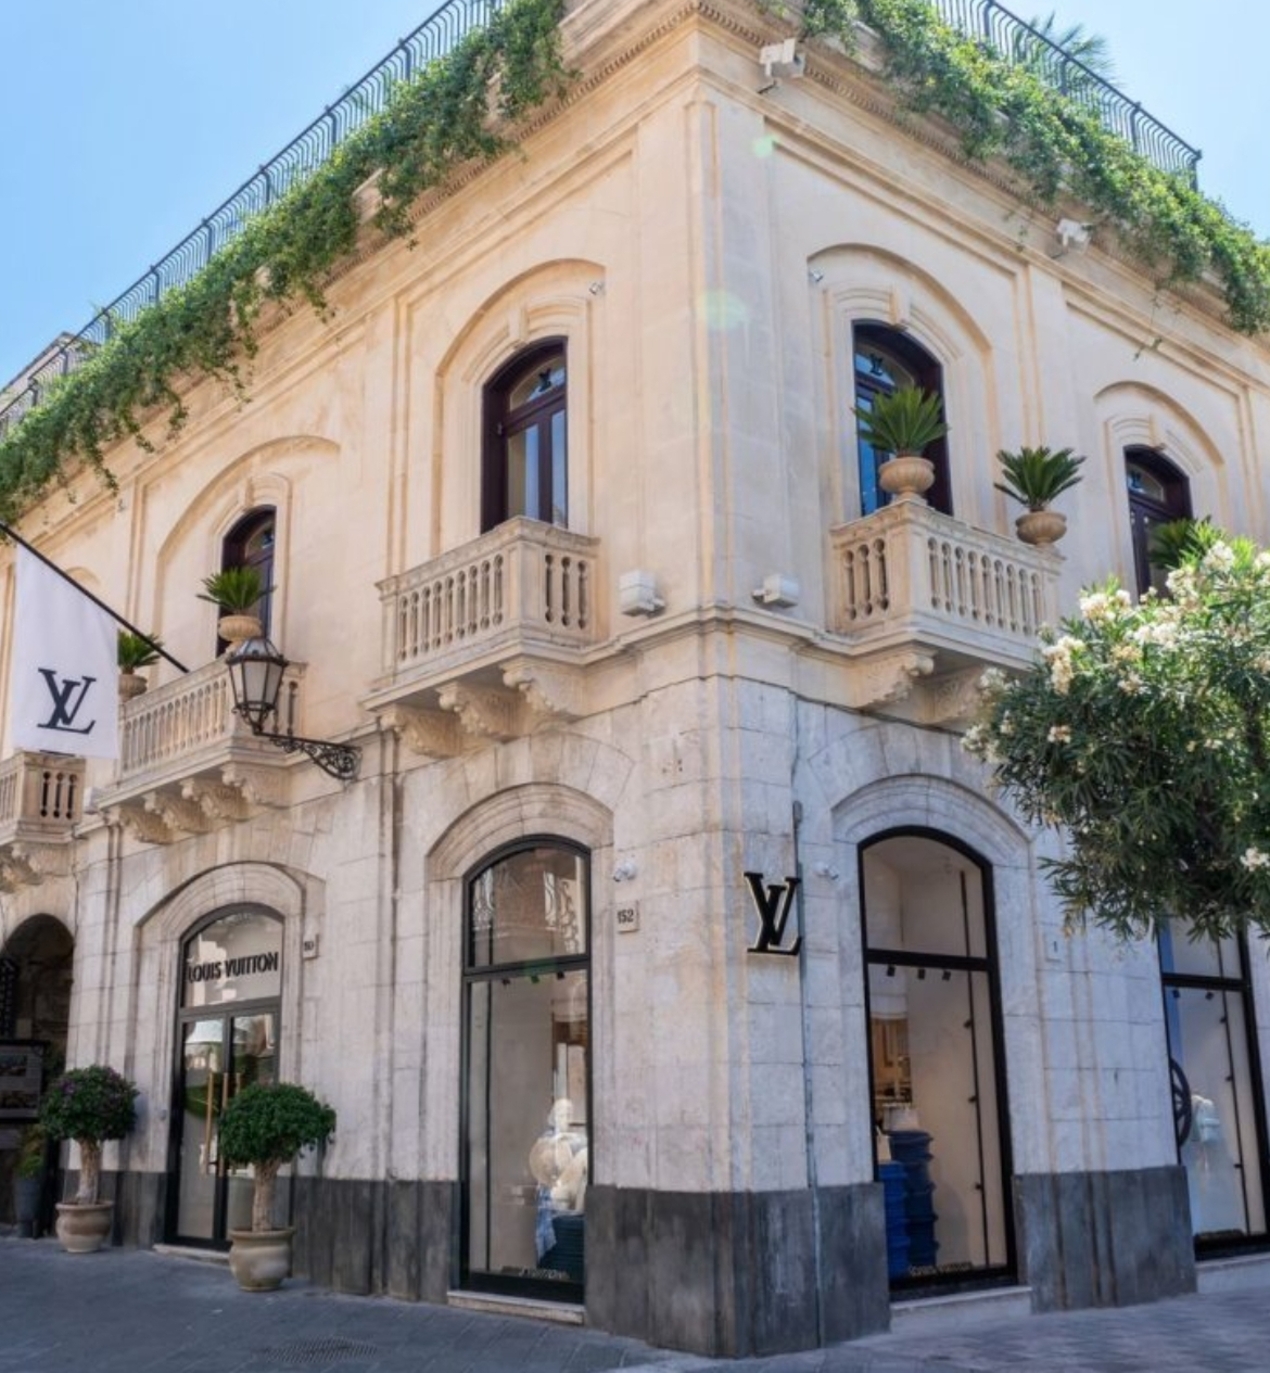 Louis Vuitton abre una macrotienda en Barcelona